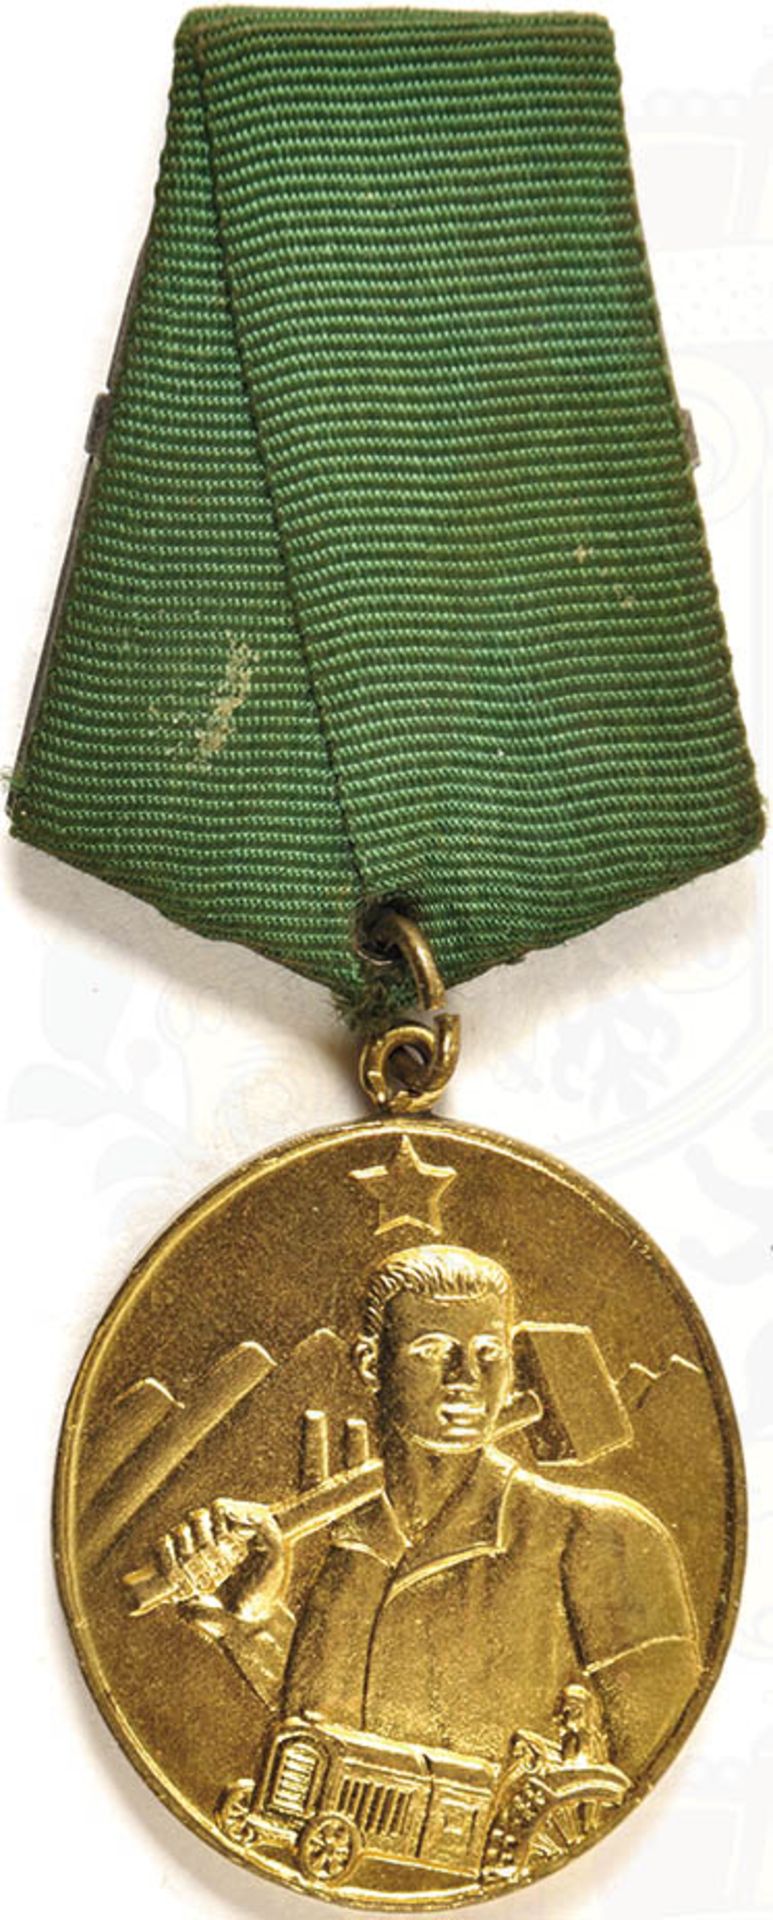 ARBEITS-VERDIENSTORDEN, Verdienst-Medaille, vergld., a. Bd.-Tragespange < 1035009F, Zustand: I-II,